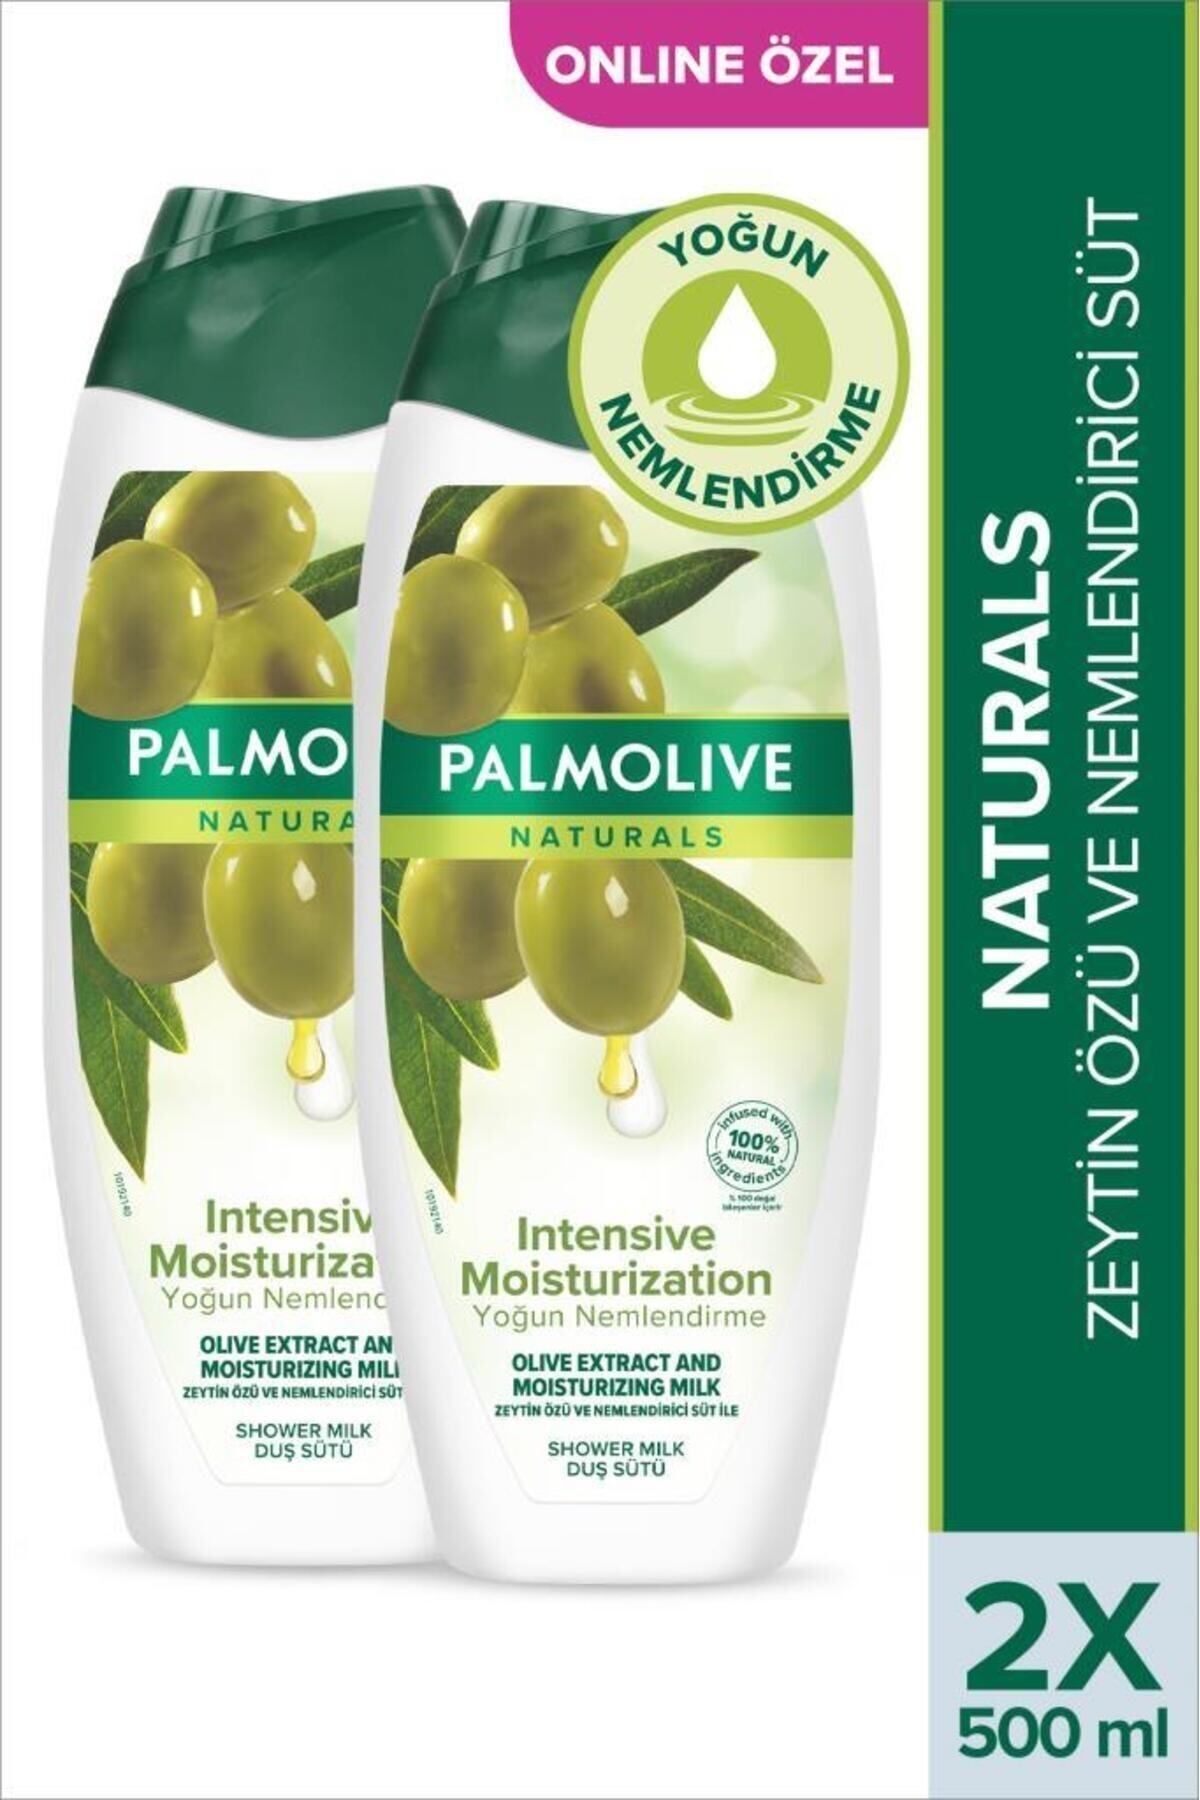 Palmolive Naturals Zeytin Özü ve Nemlendirici Süt İle Yoğun Nemlendirme Duş Jeli 500 ml x2Adet